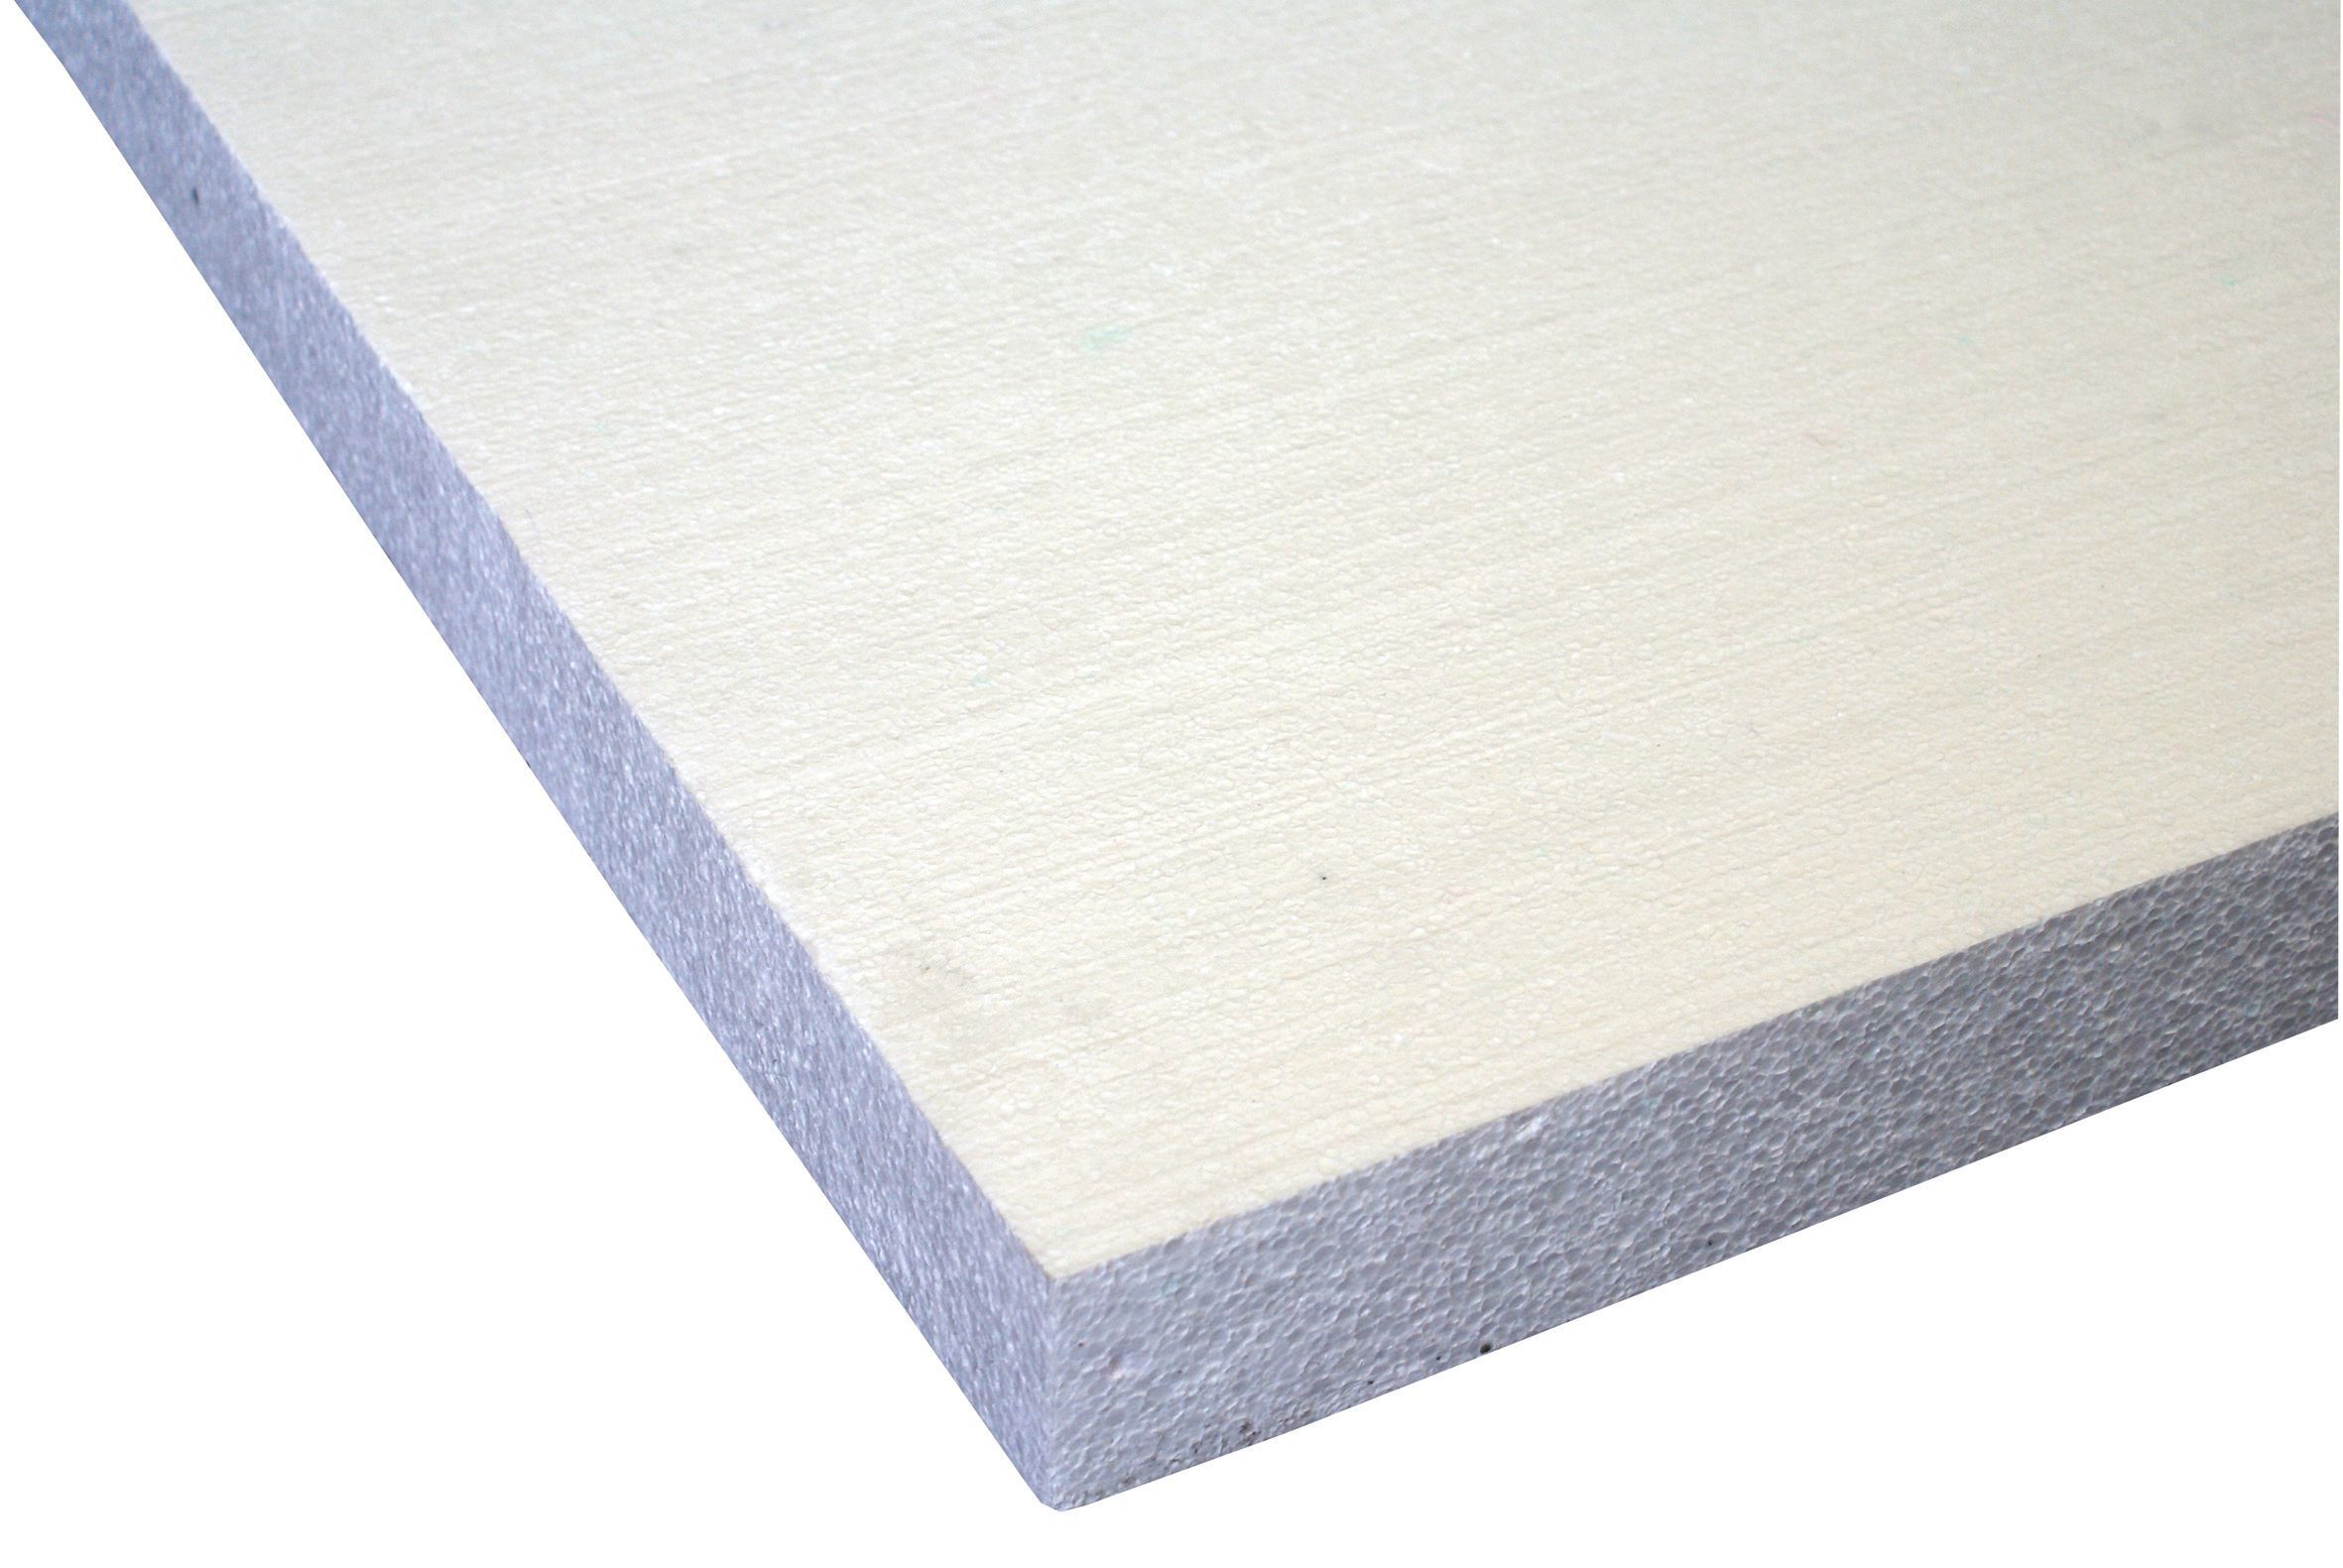 Jablite Floor Insulation Board 2400mm 1200mm 50mm | Departments | DIY ...